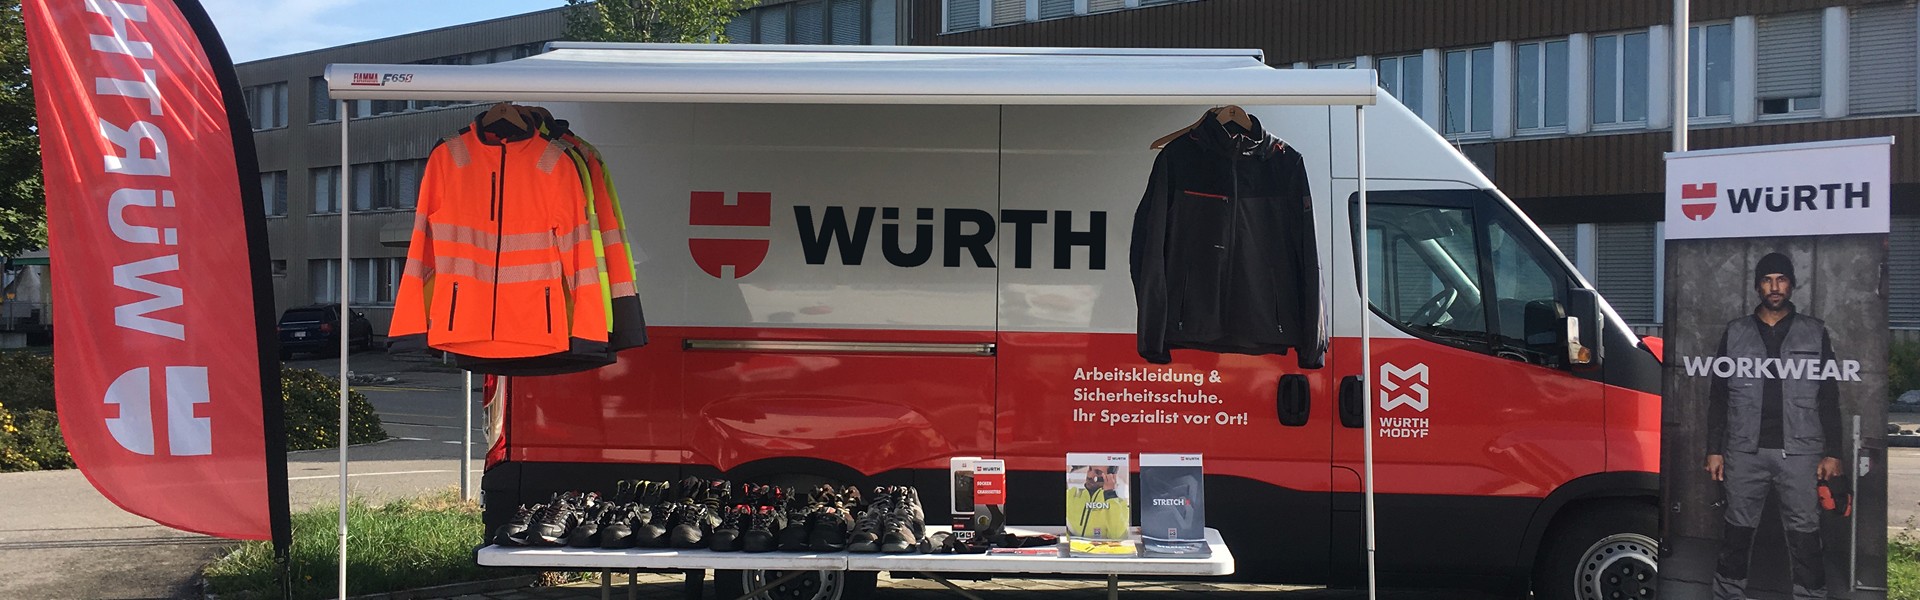 Il furgone Würth MODYF